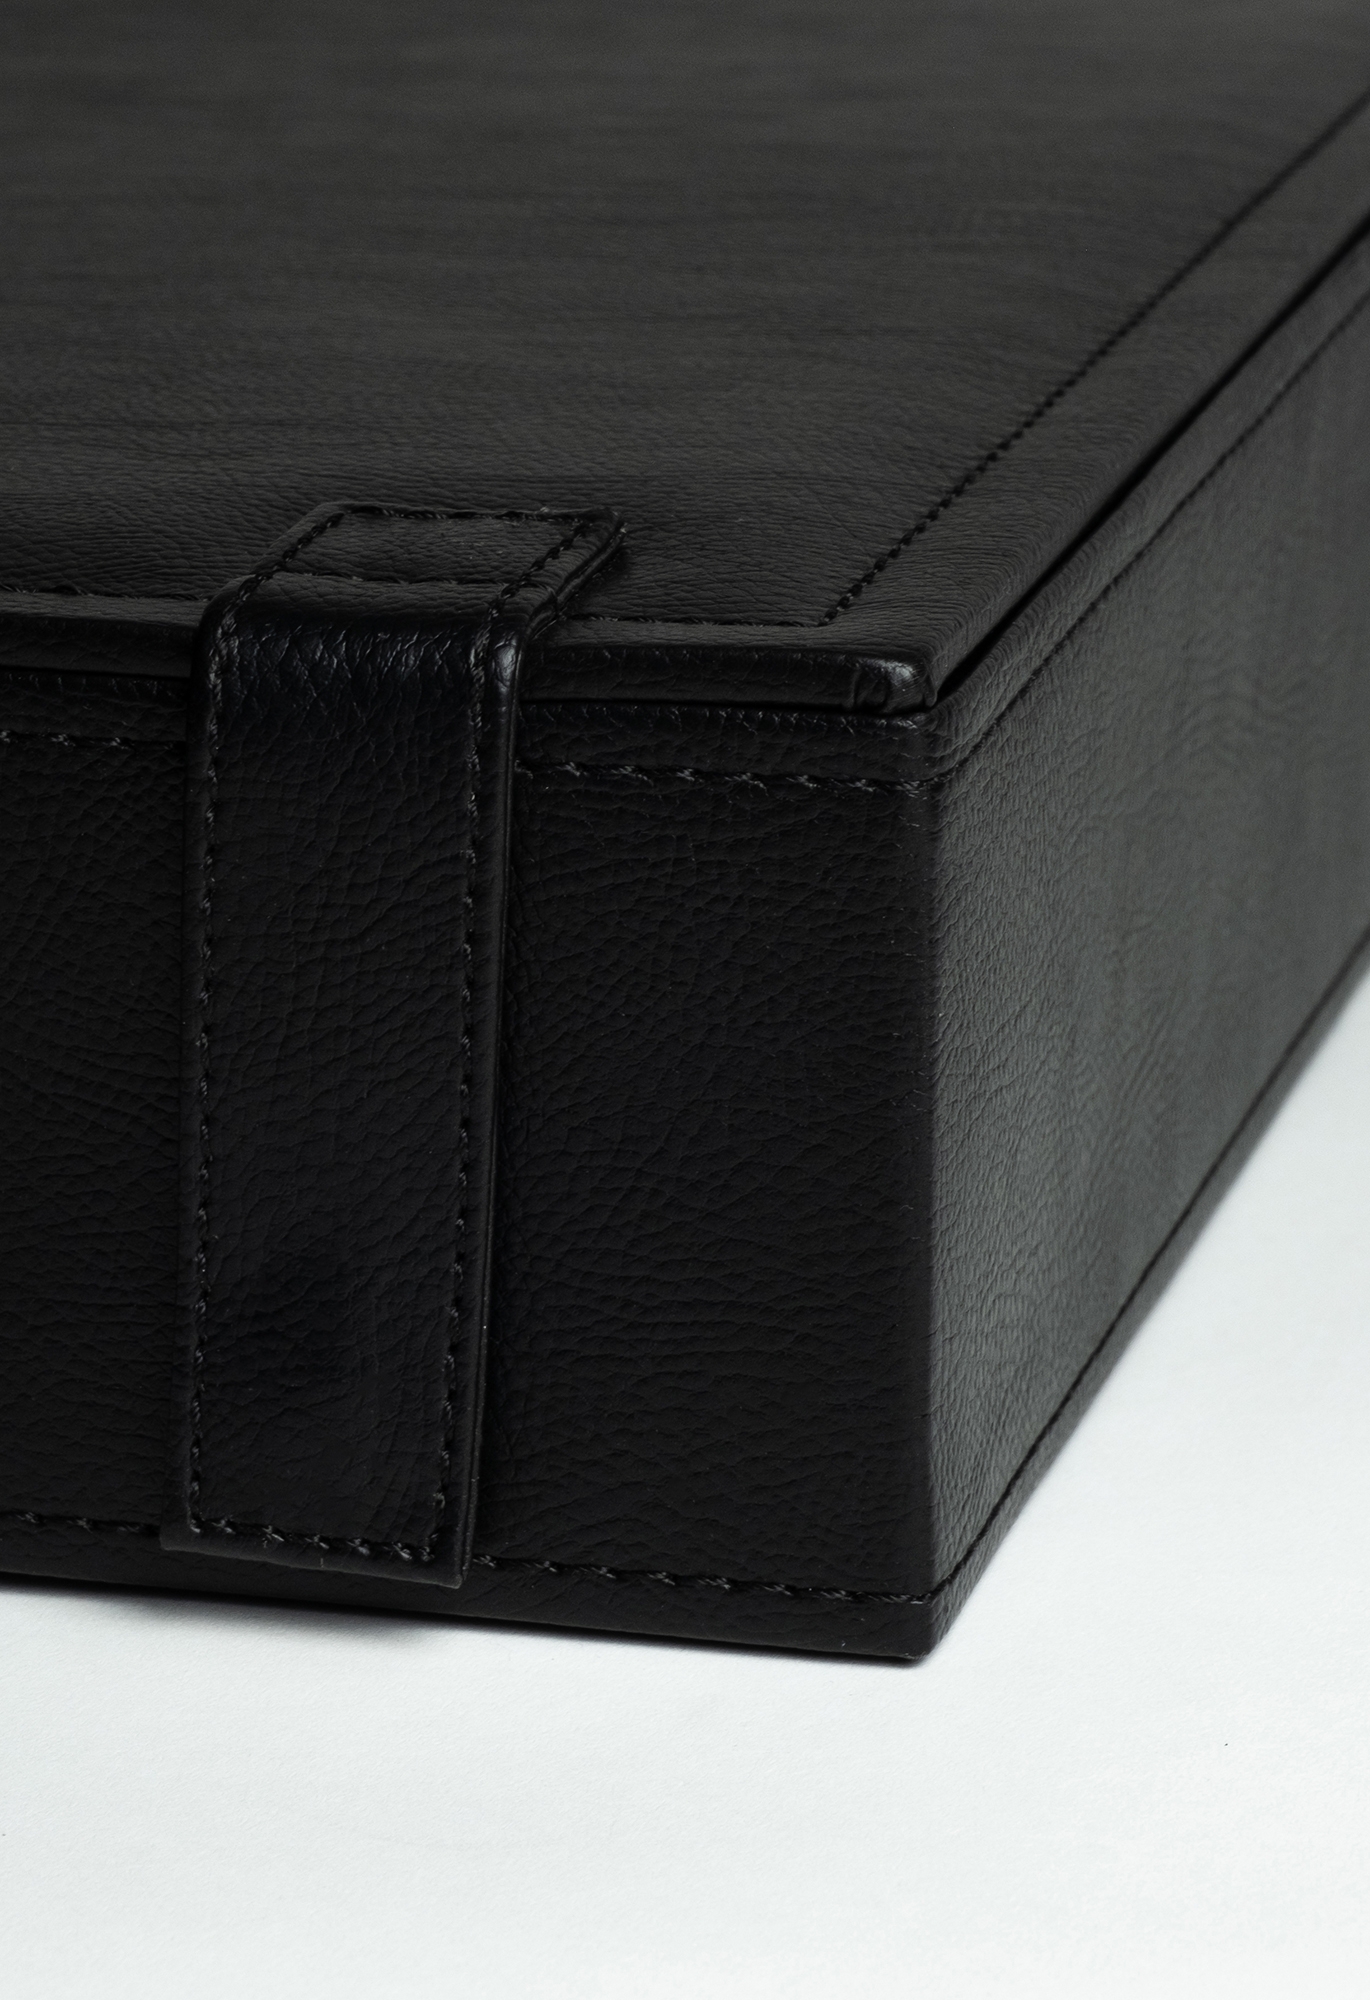 Biscay Koffer Konstruktive Details 3